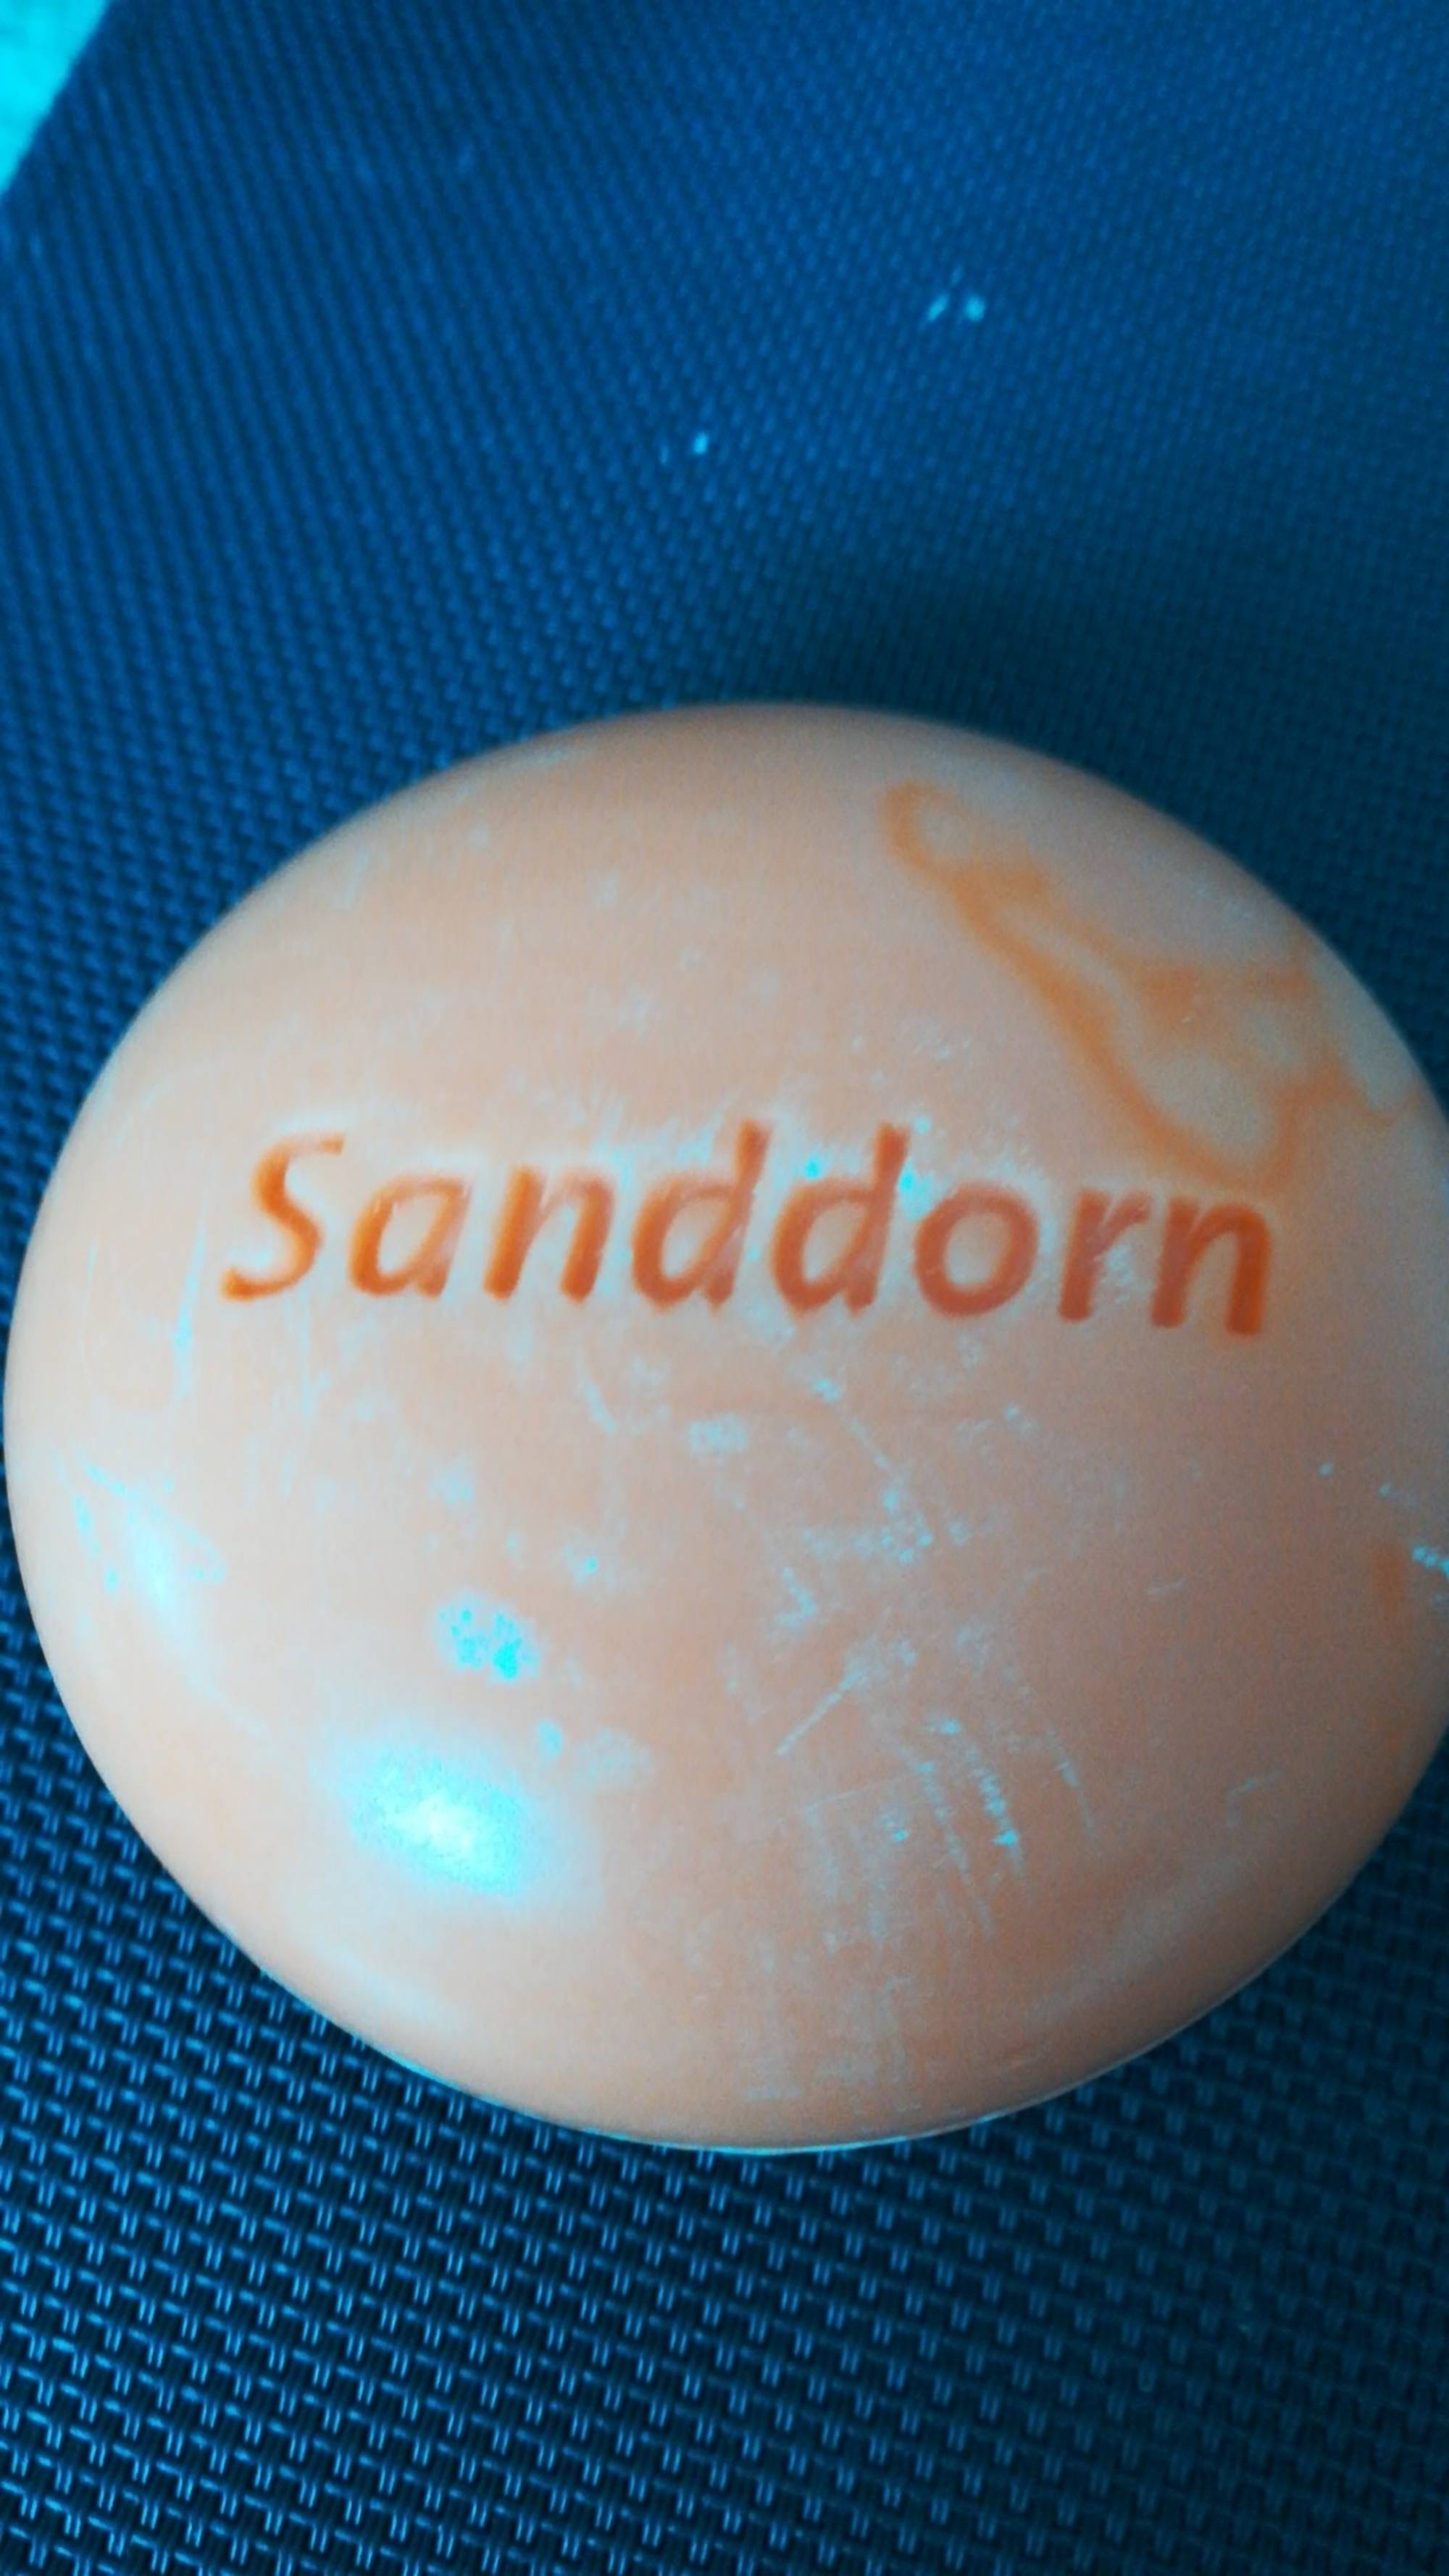 SPEICK - Sanddorn - Pain de savon